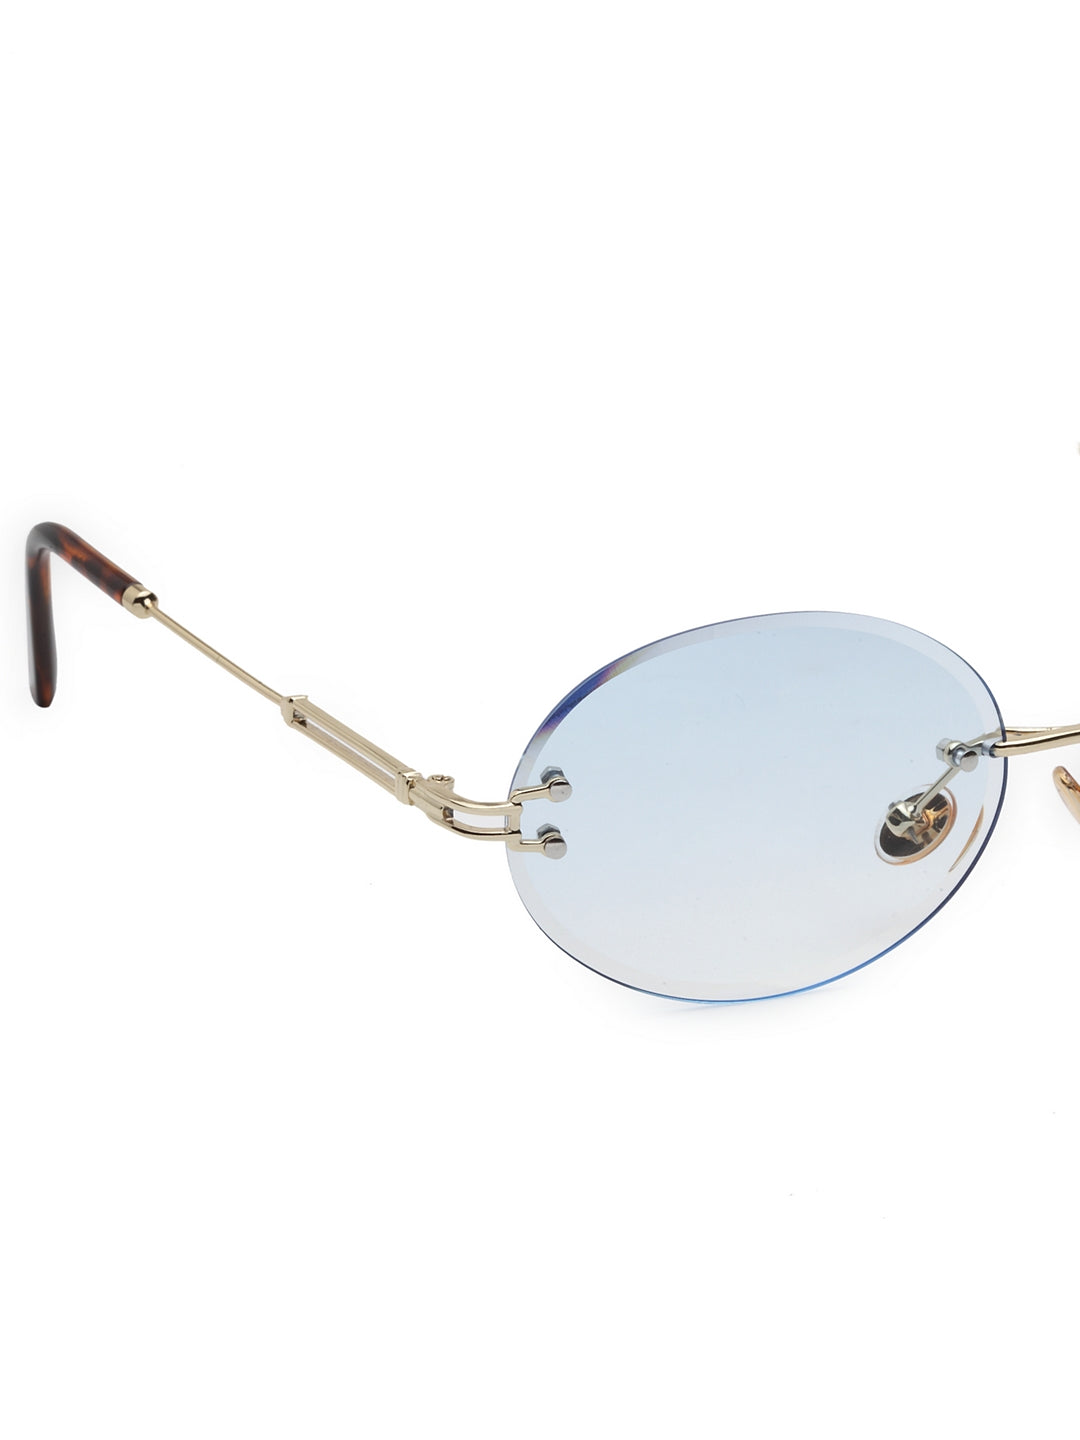 Rimless Eyeglasses Round Ocean Sunglasses for Women